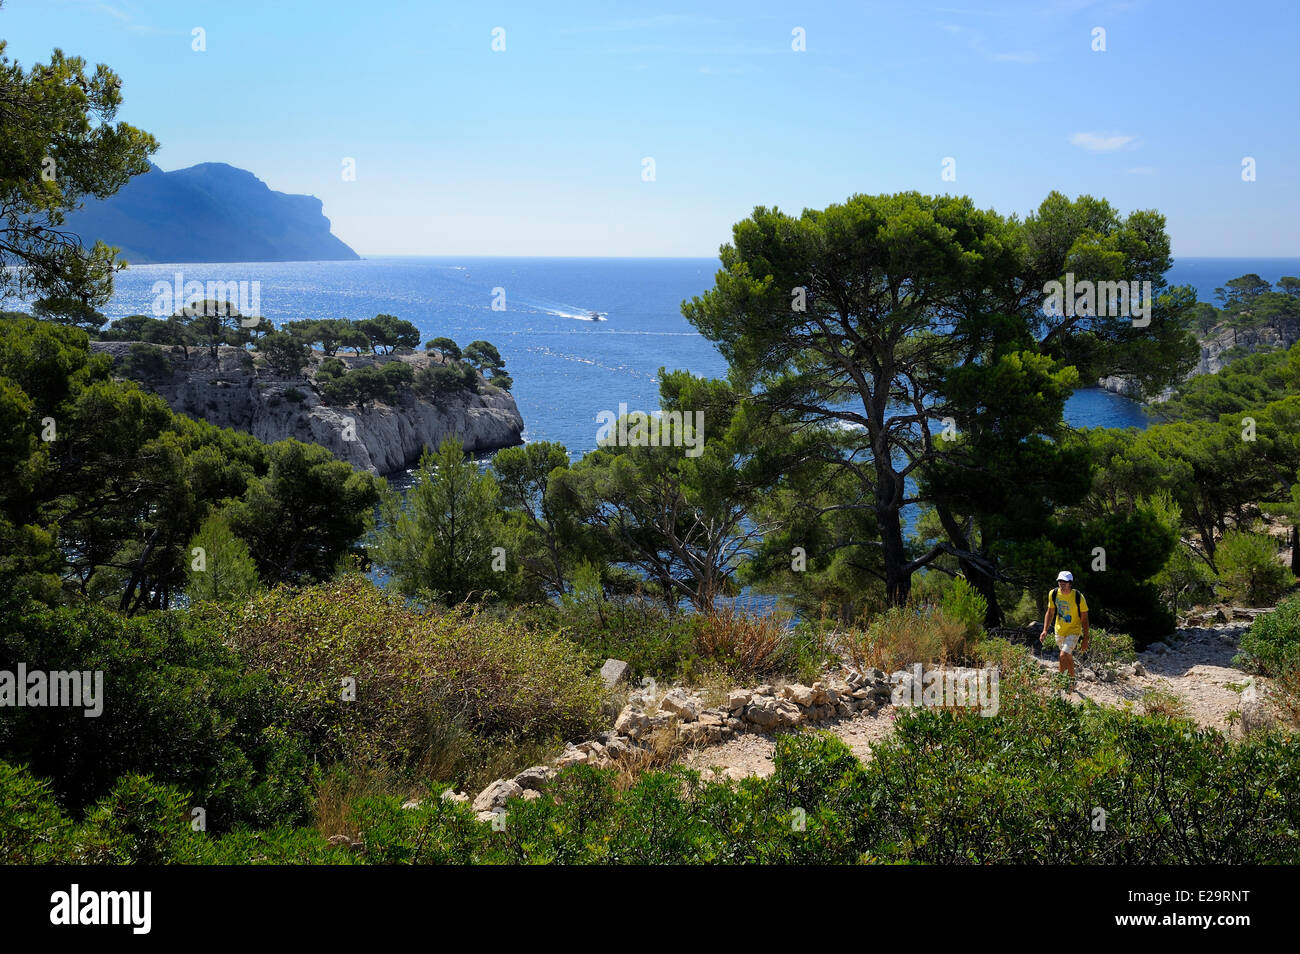 Francia, Bouches du Rhone, Cassis, penisola di porto miou e le scogliere di Cap Canaille in background Foto Stock